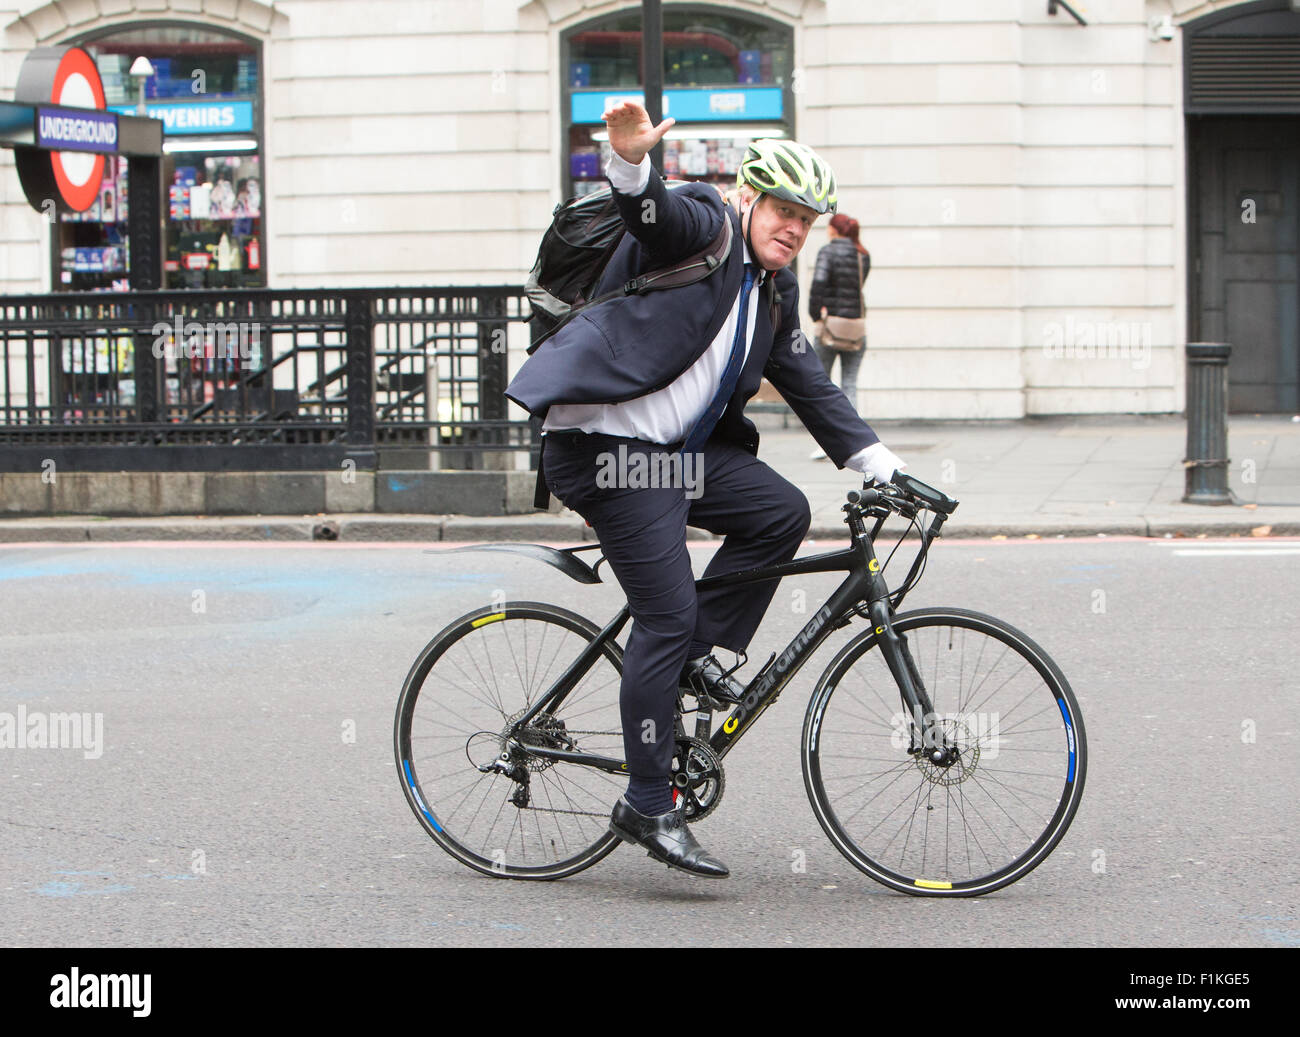 Sindaco di Londra,Boris Johnson,lancia il più sicuro sistema di ciclismo rendendo più sicuri i camion Foto Stock